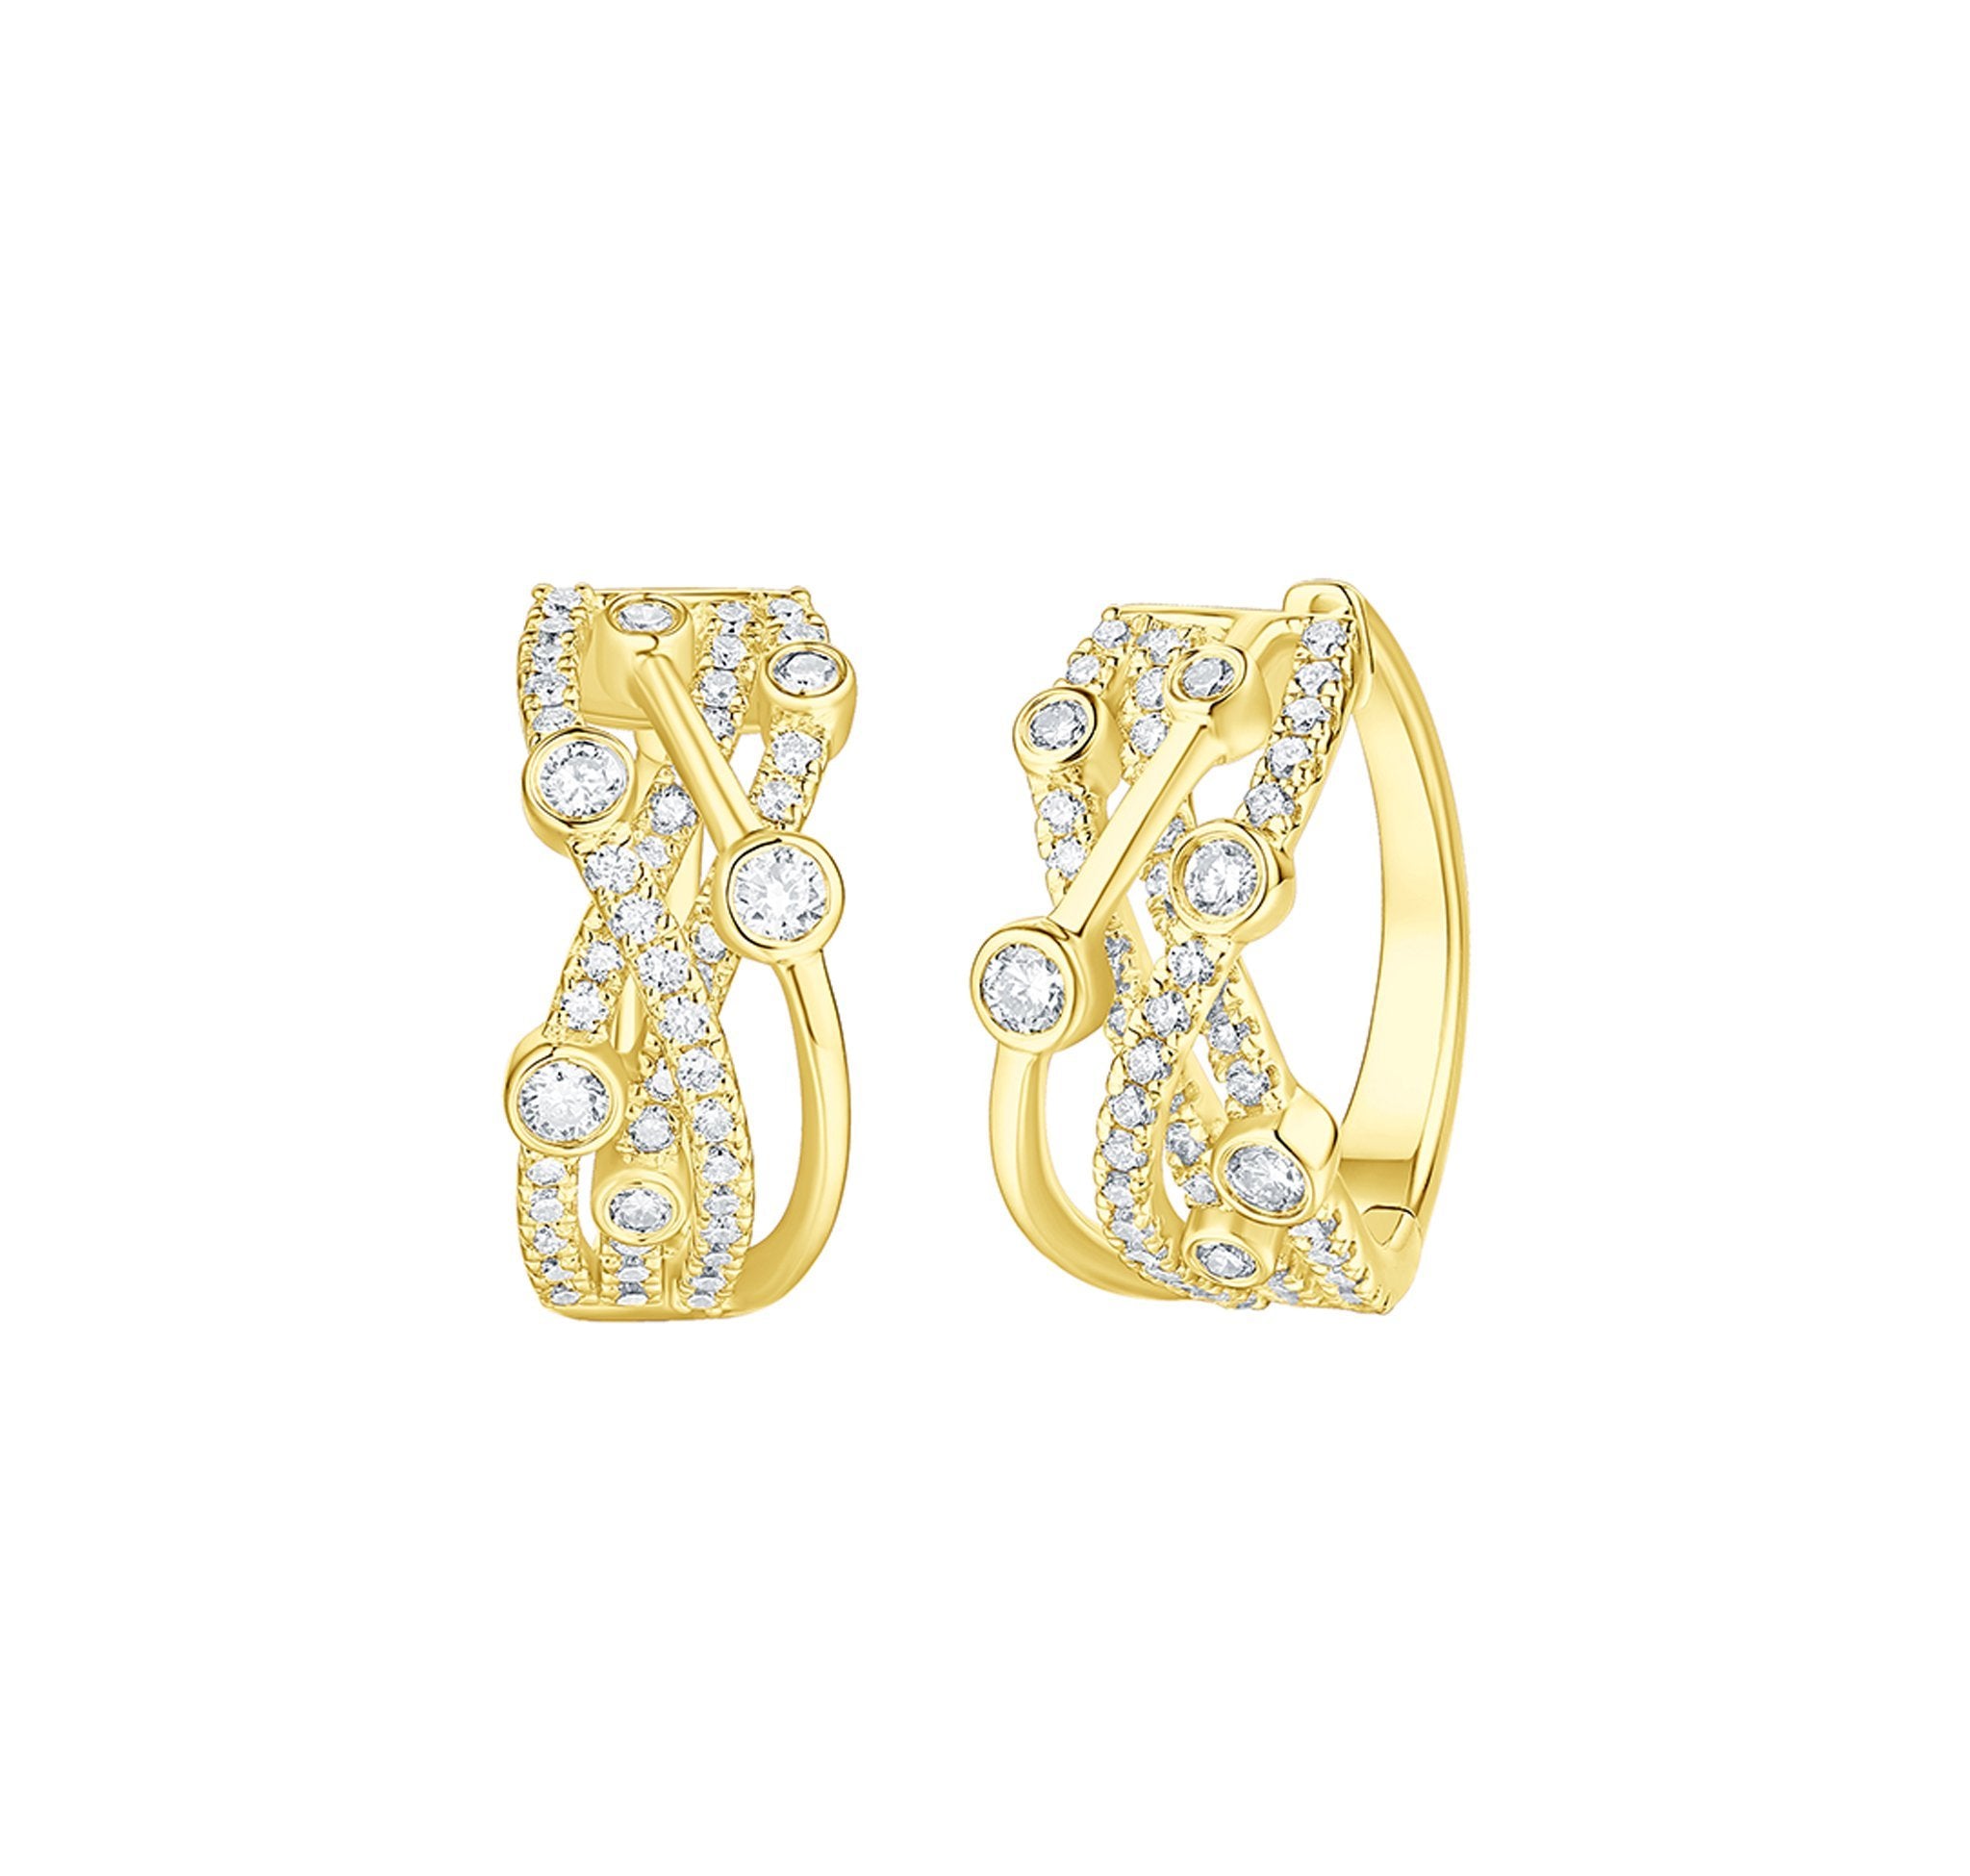 Smiling Rocks Lab grown diamond Bubbly Criss Cross Hoop Earrings in 10K 1.02ctw Yellow Gold